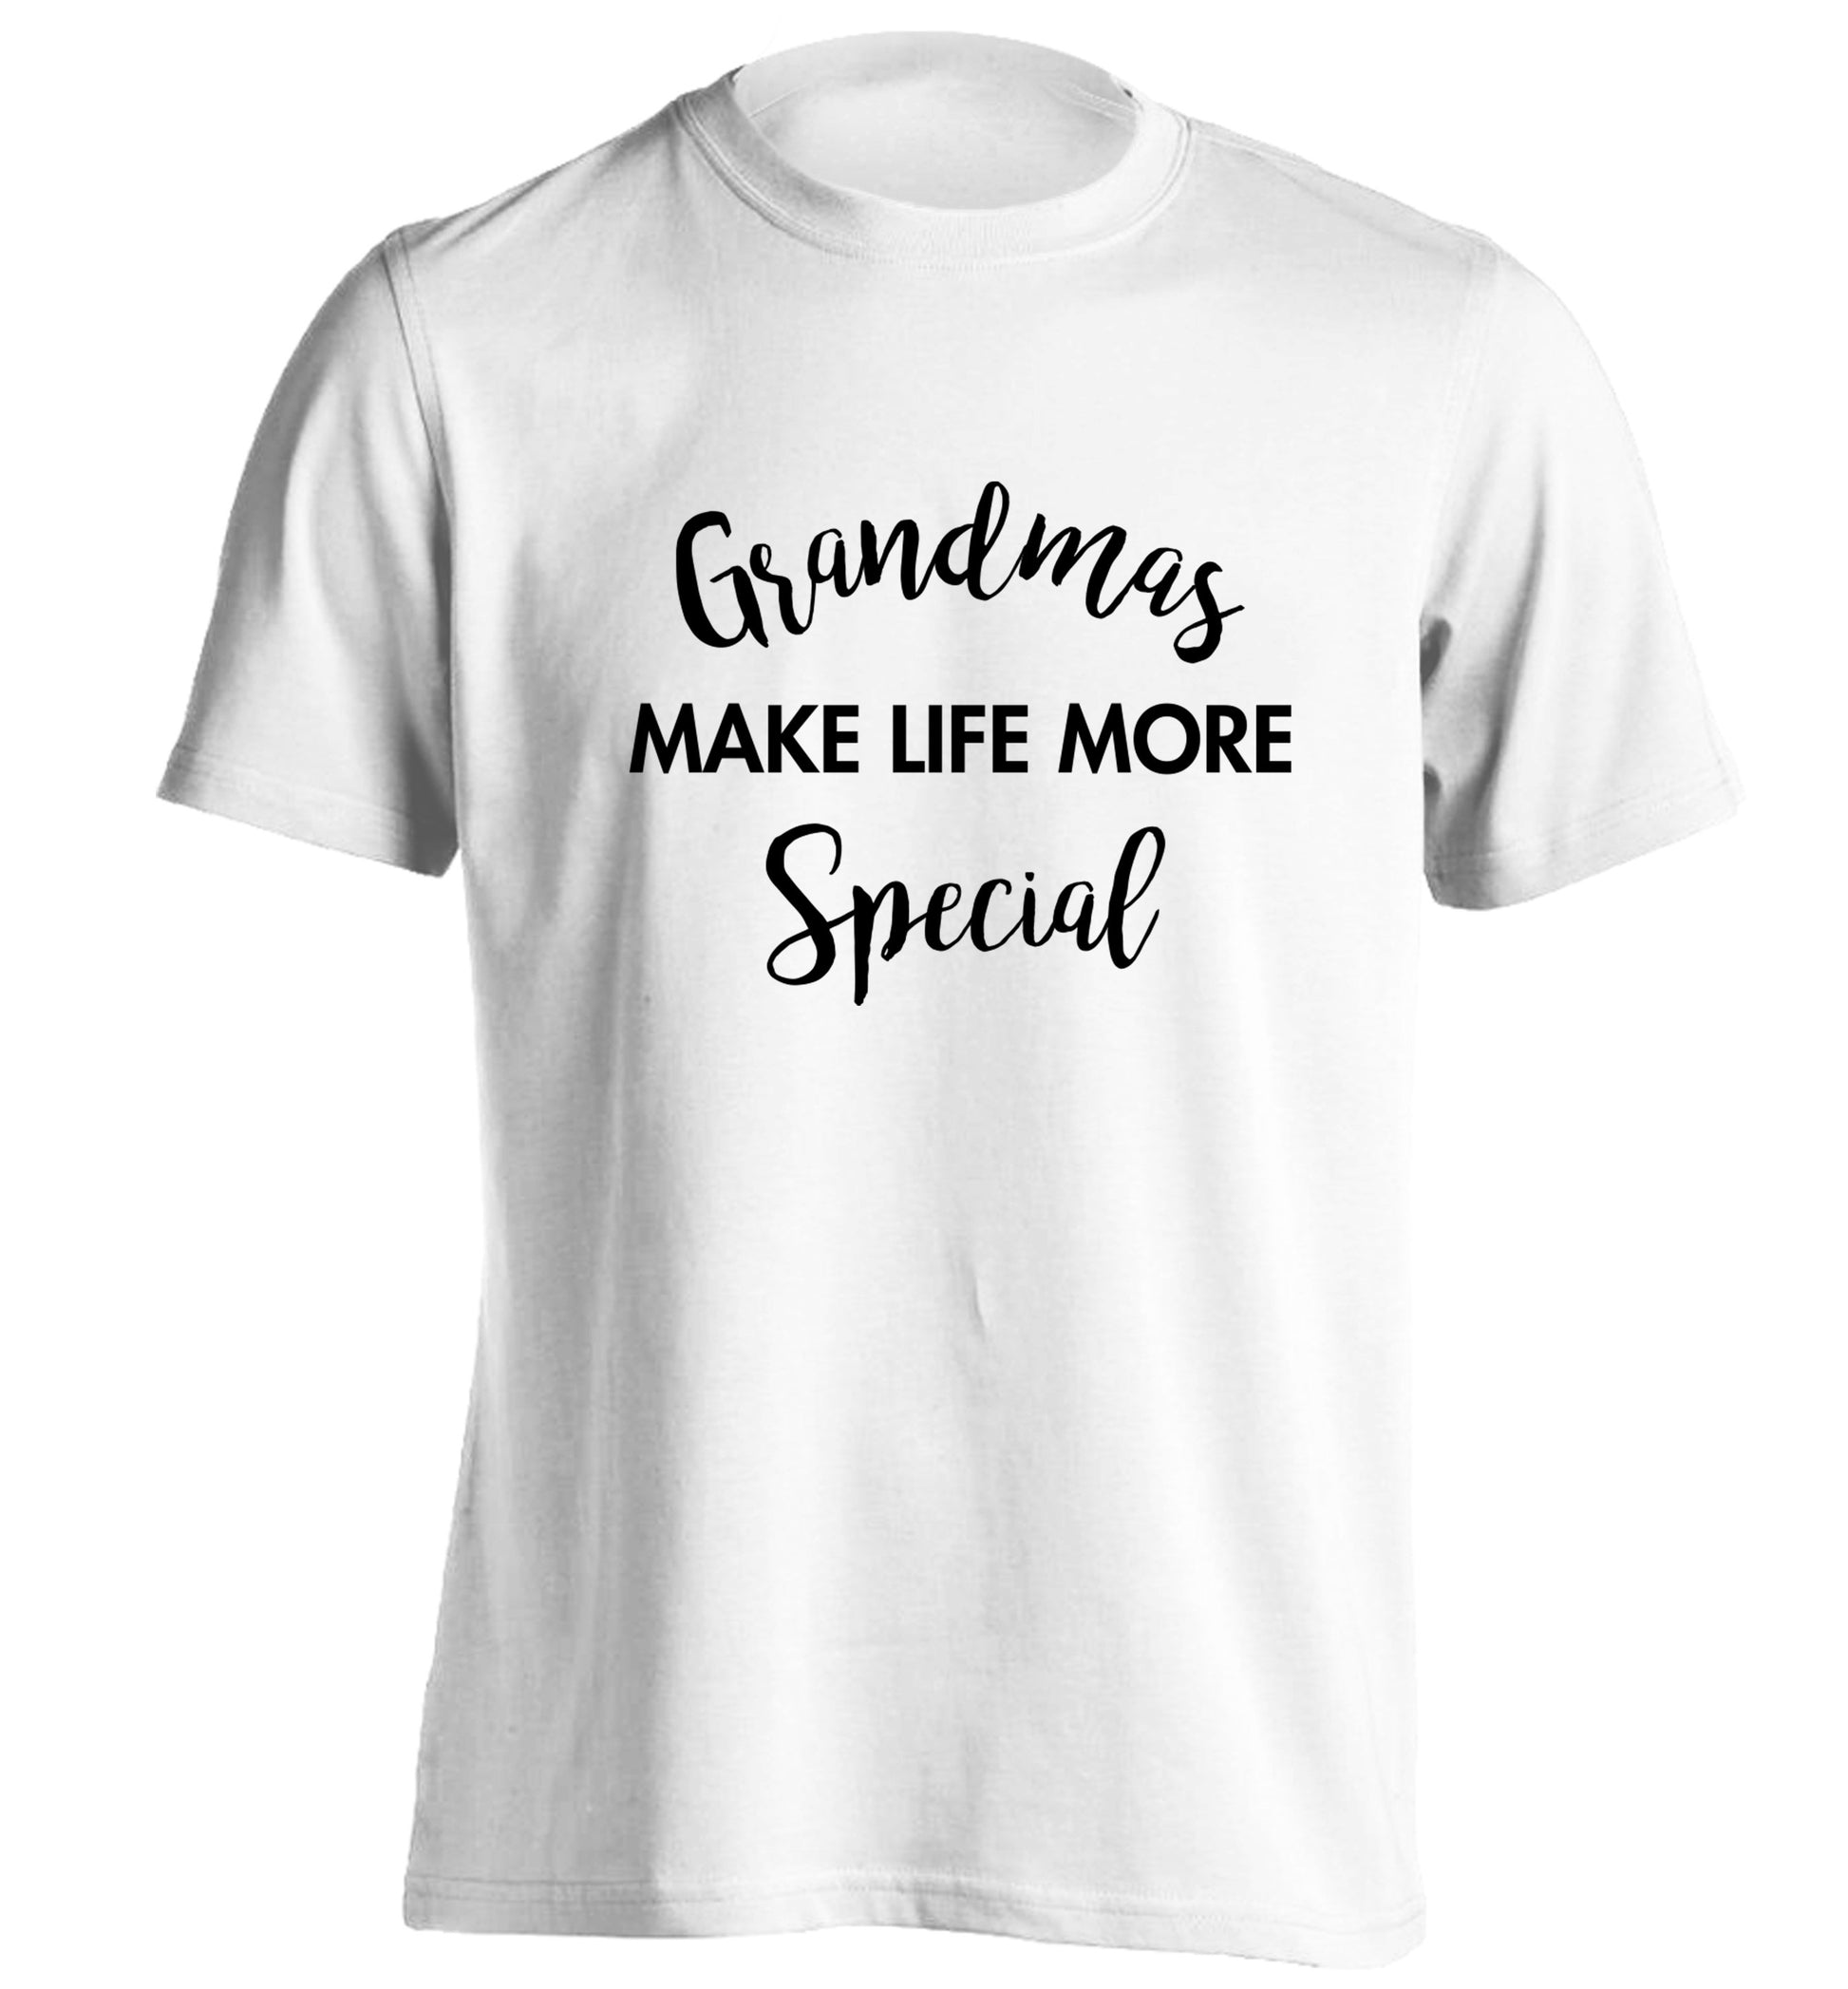 Grandmas make life more special adults unisex white Tshirt 2XL